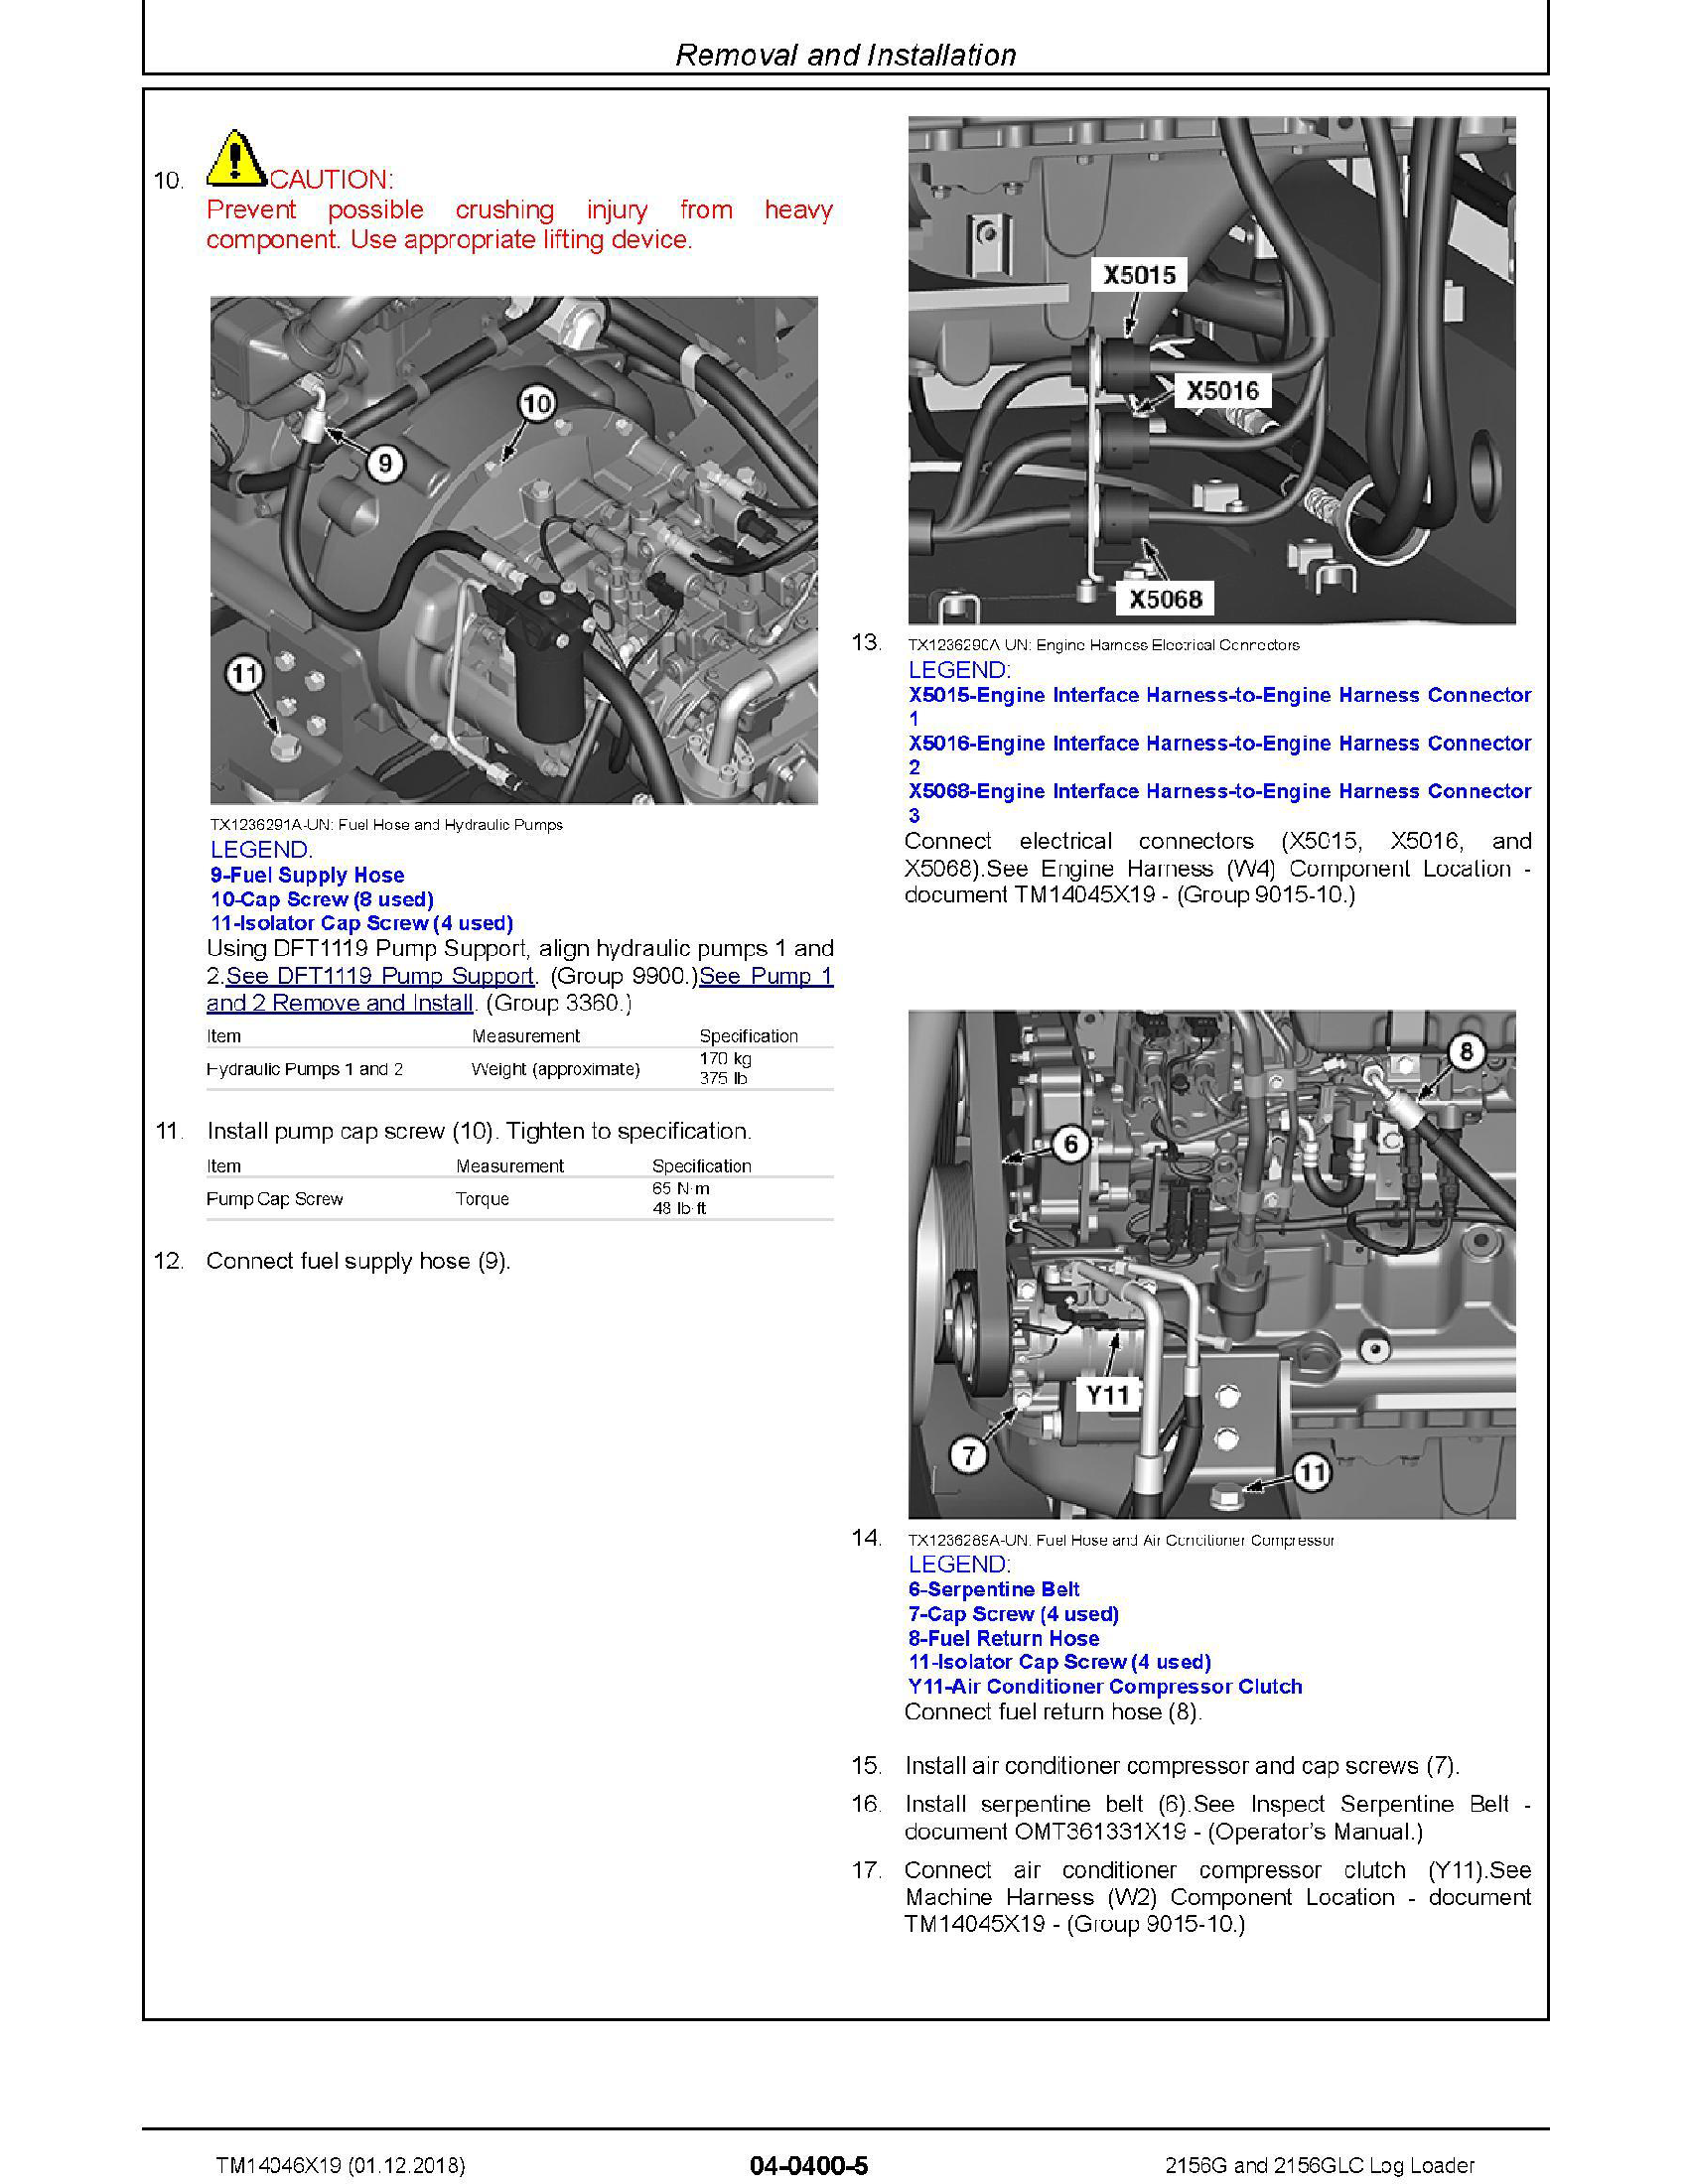 John Deere 390plus manual pdf